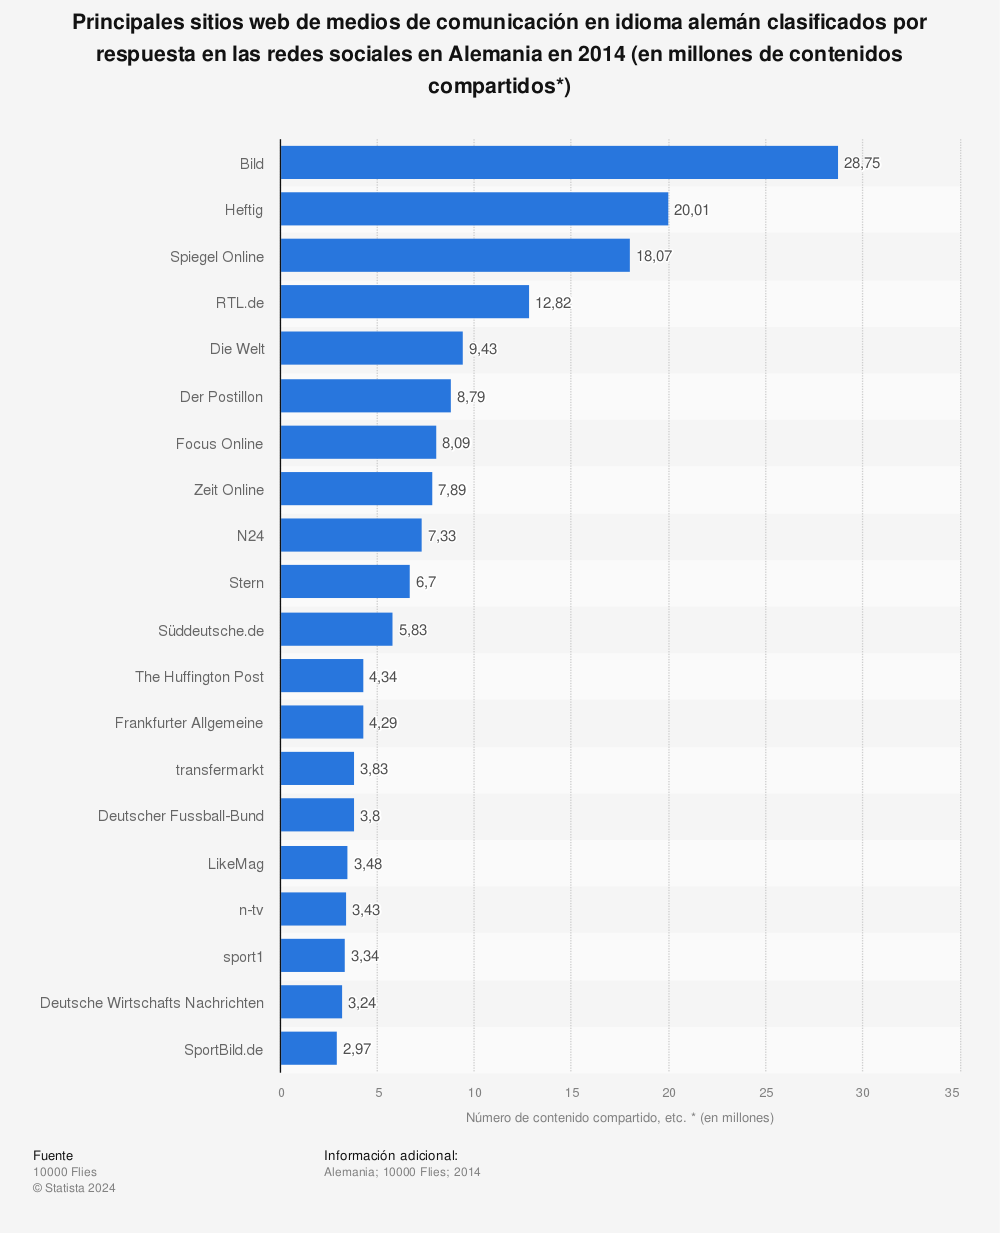 Estadística: Principales sitios web de medios de comunicación en idioma alemán clasificados por respuesta en las redes sociales en Alemania en 2014 (en millones de contenidos compartidos*) | Statista